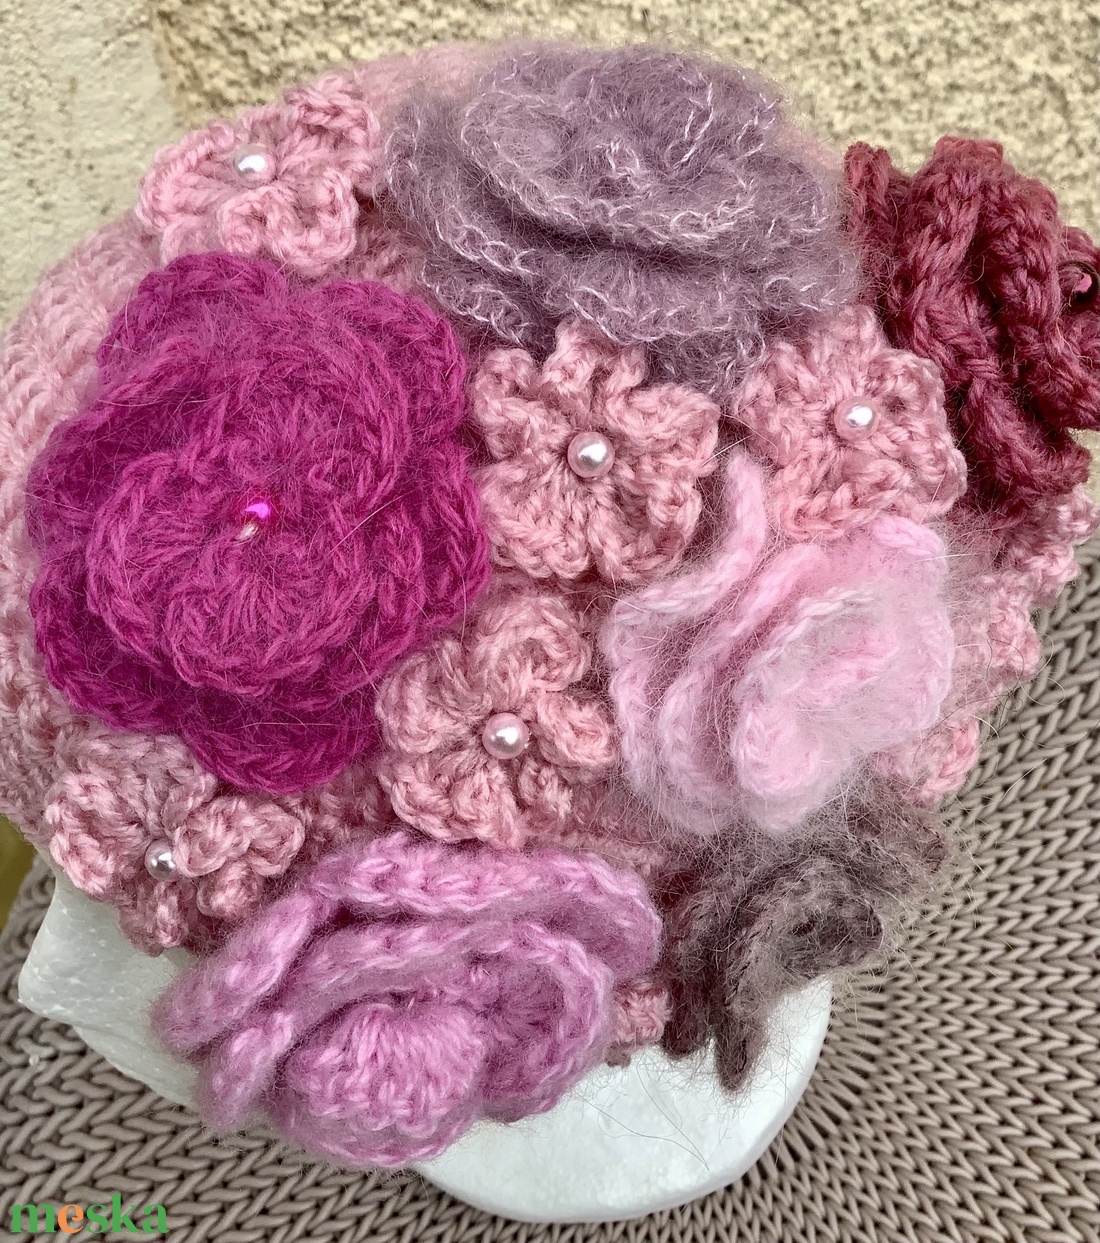 Rózsakert horgolt beanie sapka természetes puha gyapjú fonalból rózsaszínben, kis horgolt virágokkal, apró gyöngyökkel - ruha & divat - sál, sapka, kendő - sapka - Meska.hu